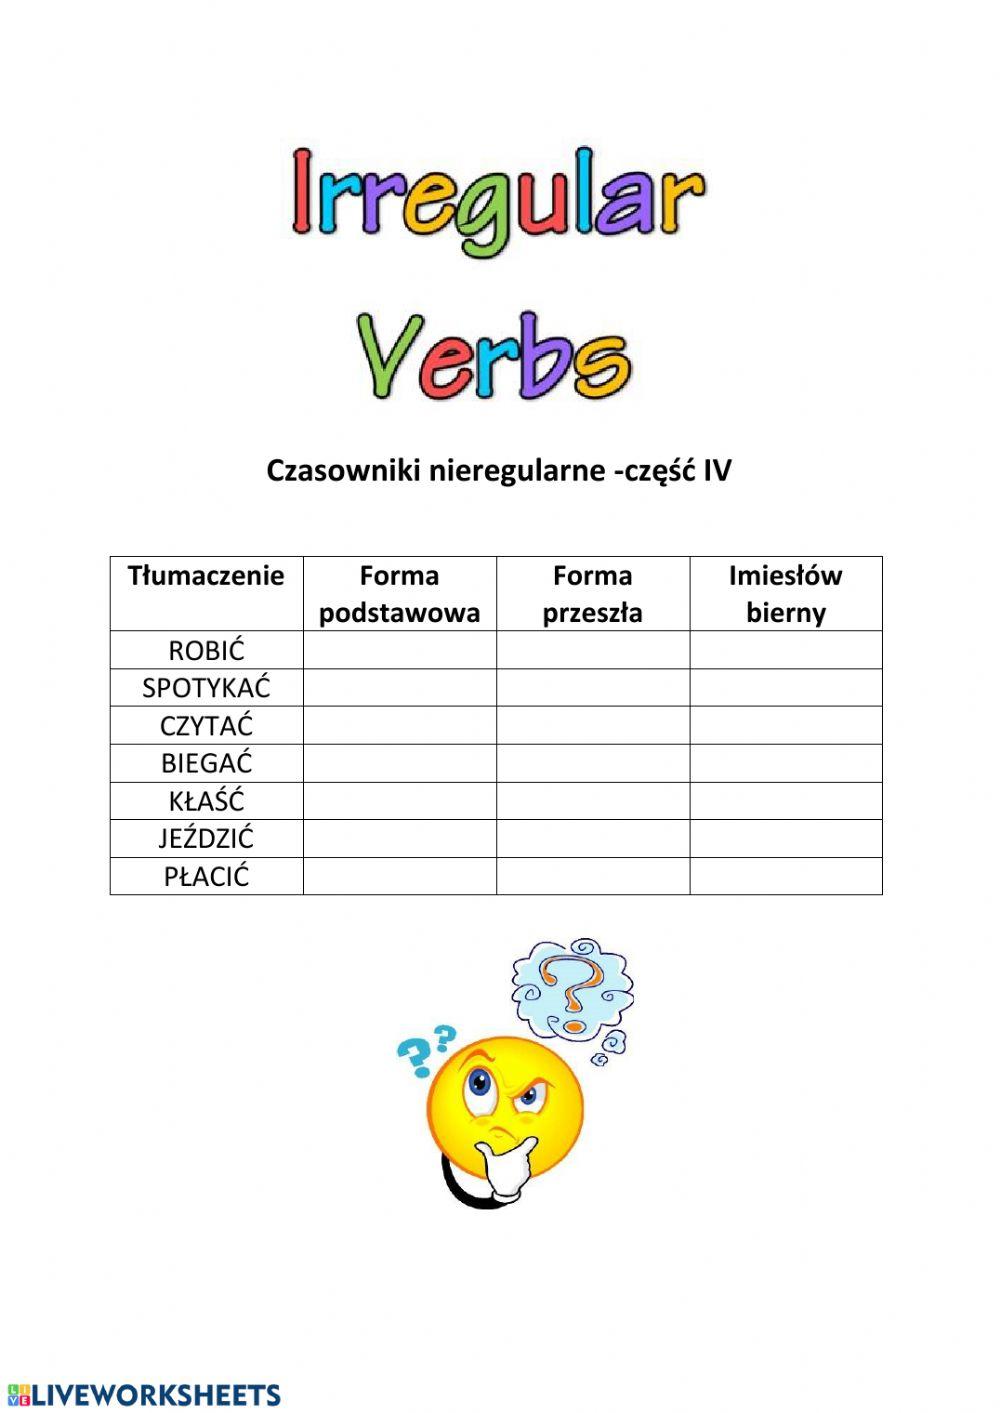 Irregular verbs - part 4